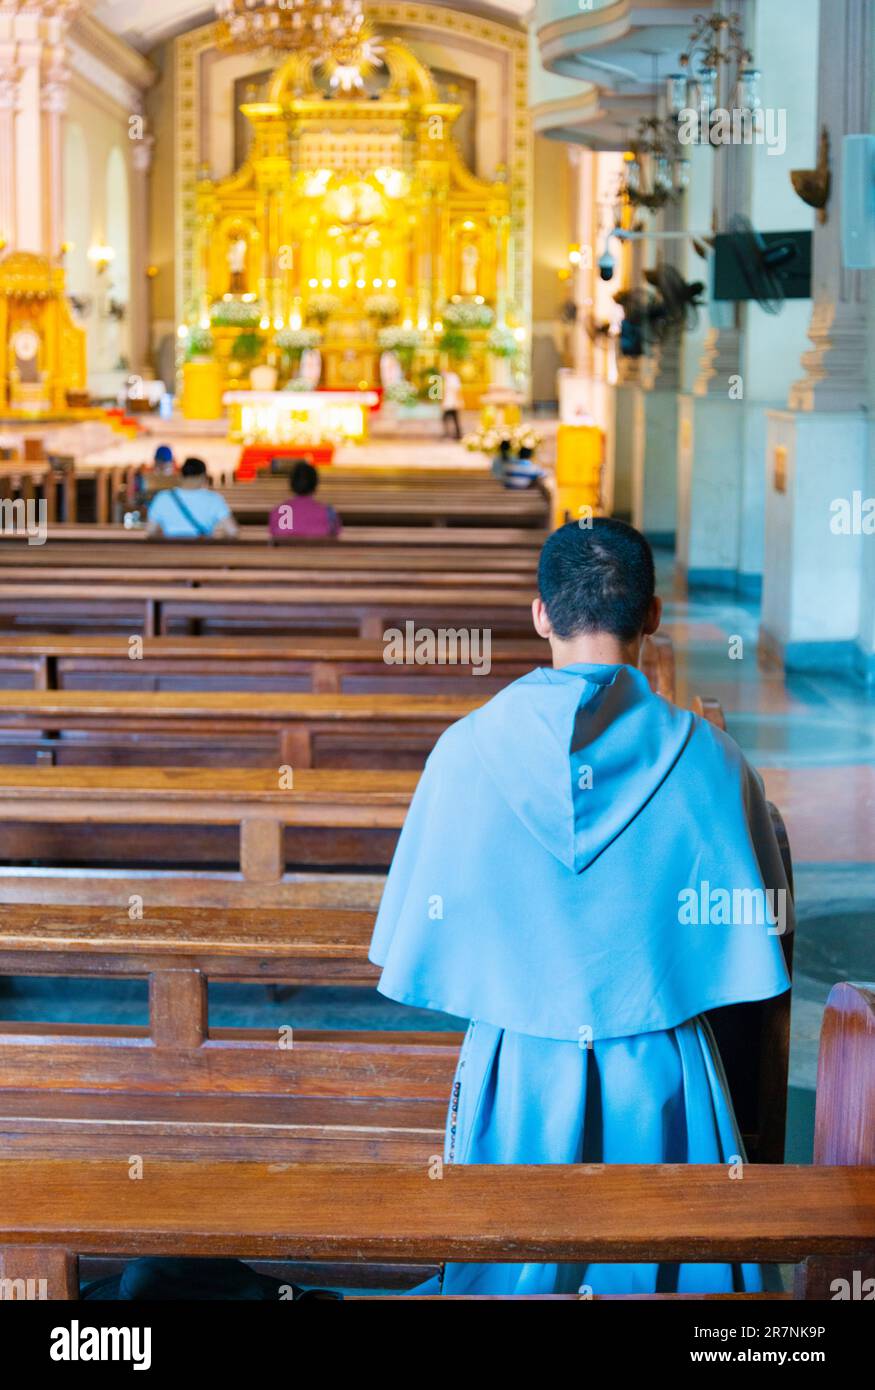 Cebu ville,Cebu,Philippines-17 janvier 2023:au cours de la journée,les fidèles catholiques philippins visitant la cathédrale,viennent et vont,sur une base régulière,pour prier,moi Banque D'Images